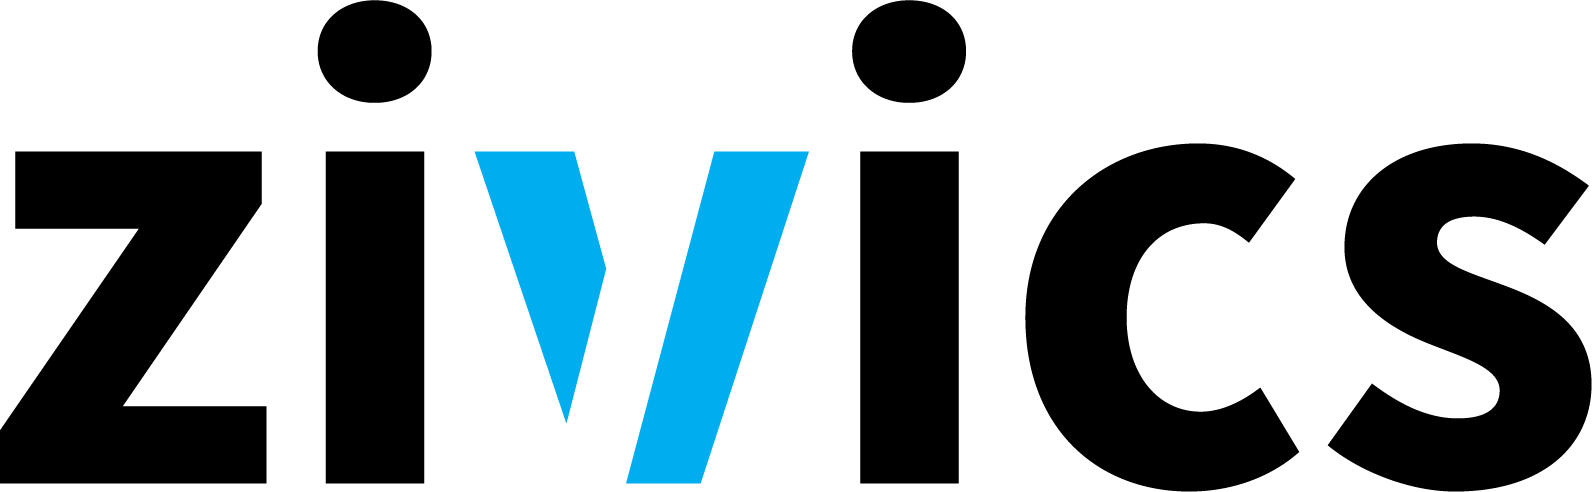 zivics logo